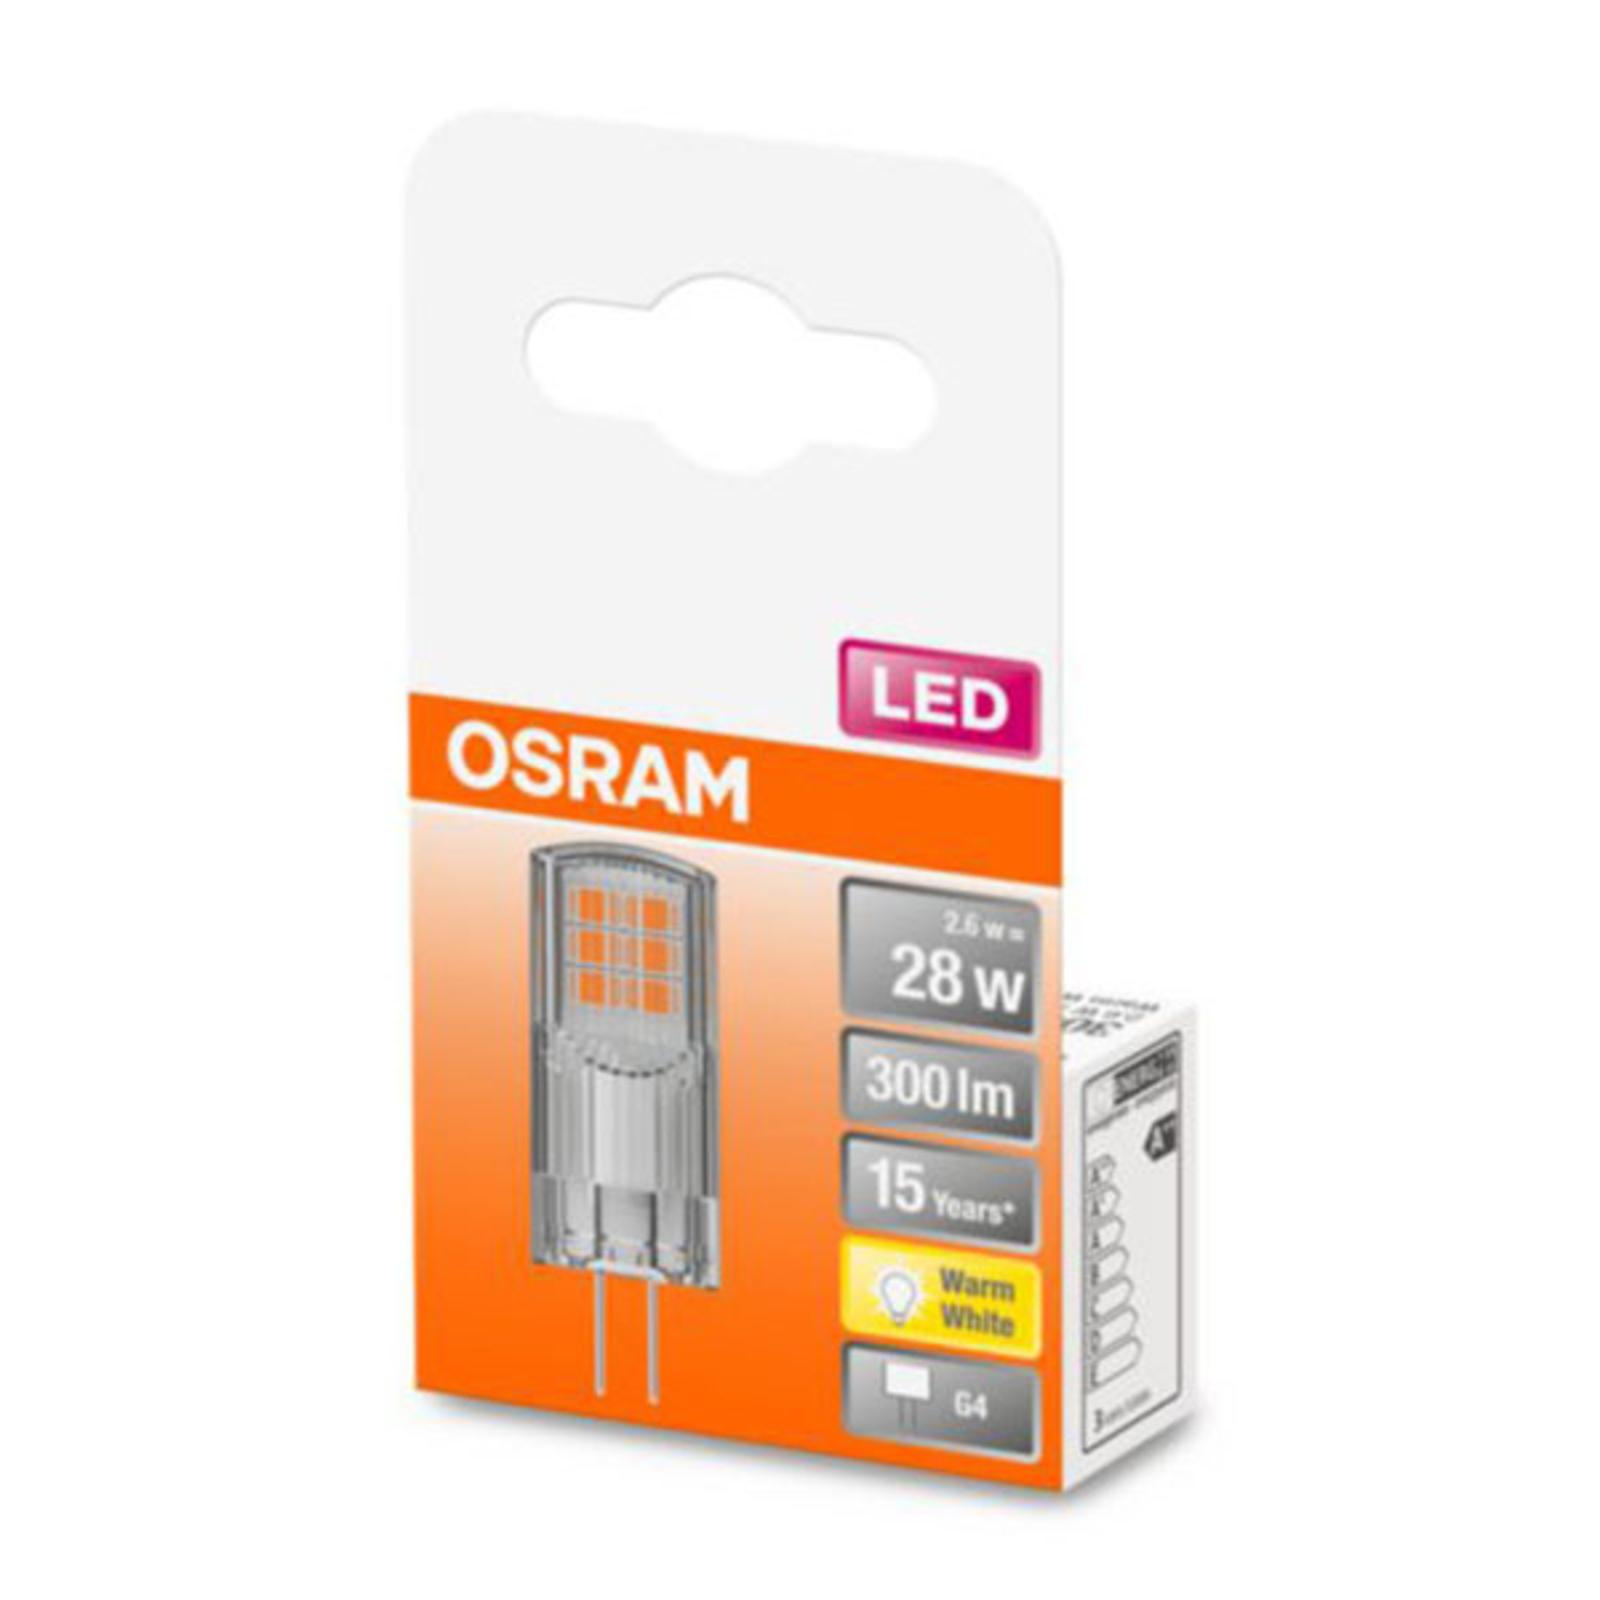 OSRAM LED Stiftlampe G4 2,6W, warmweiß, 300 lm